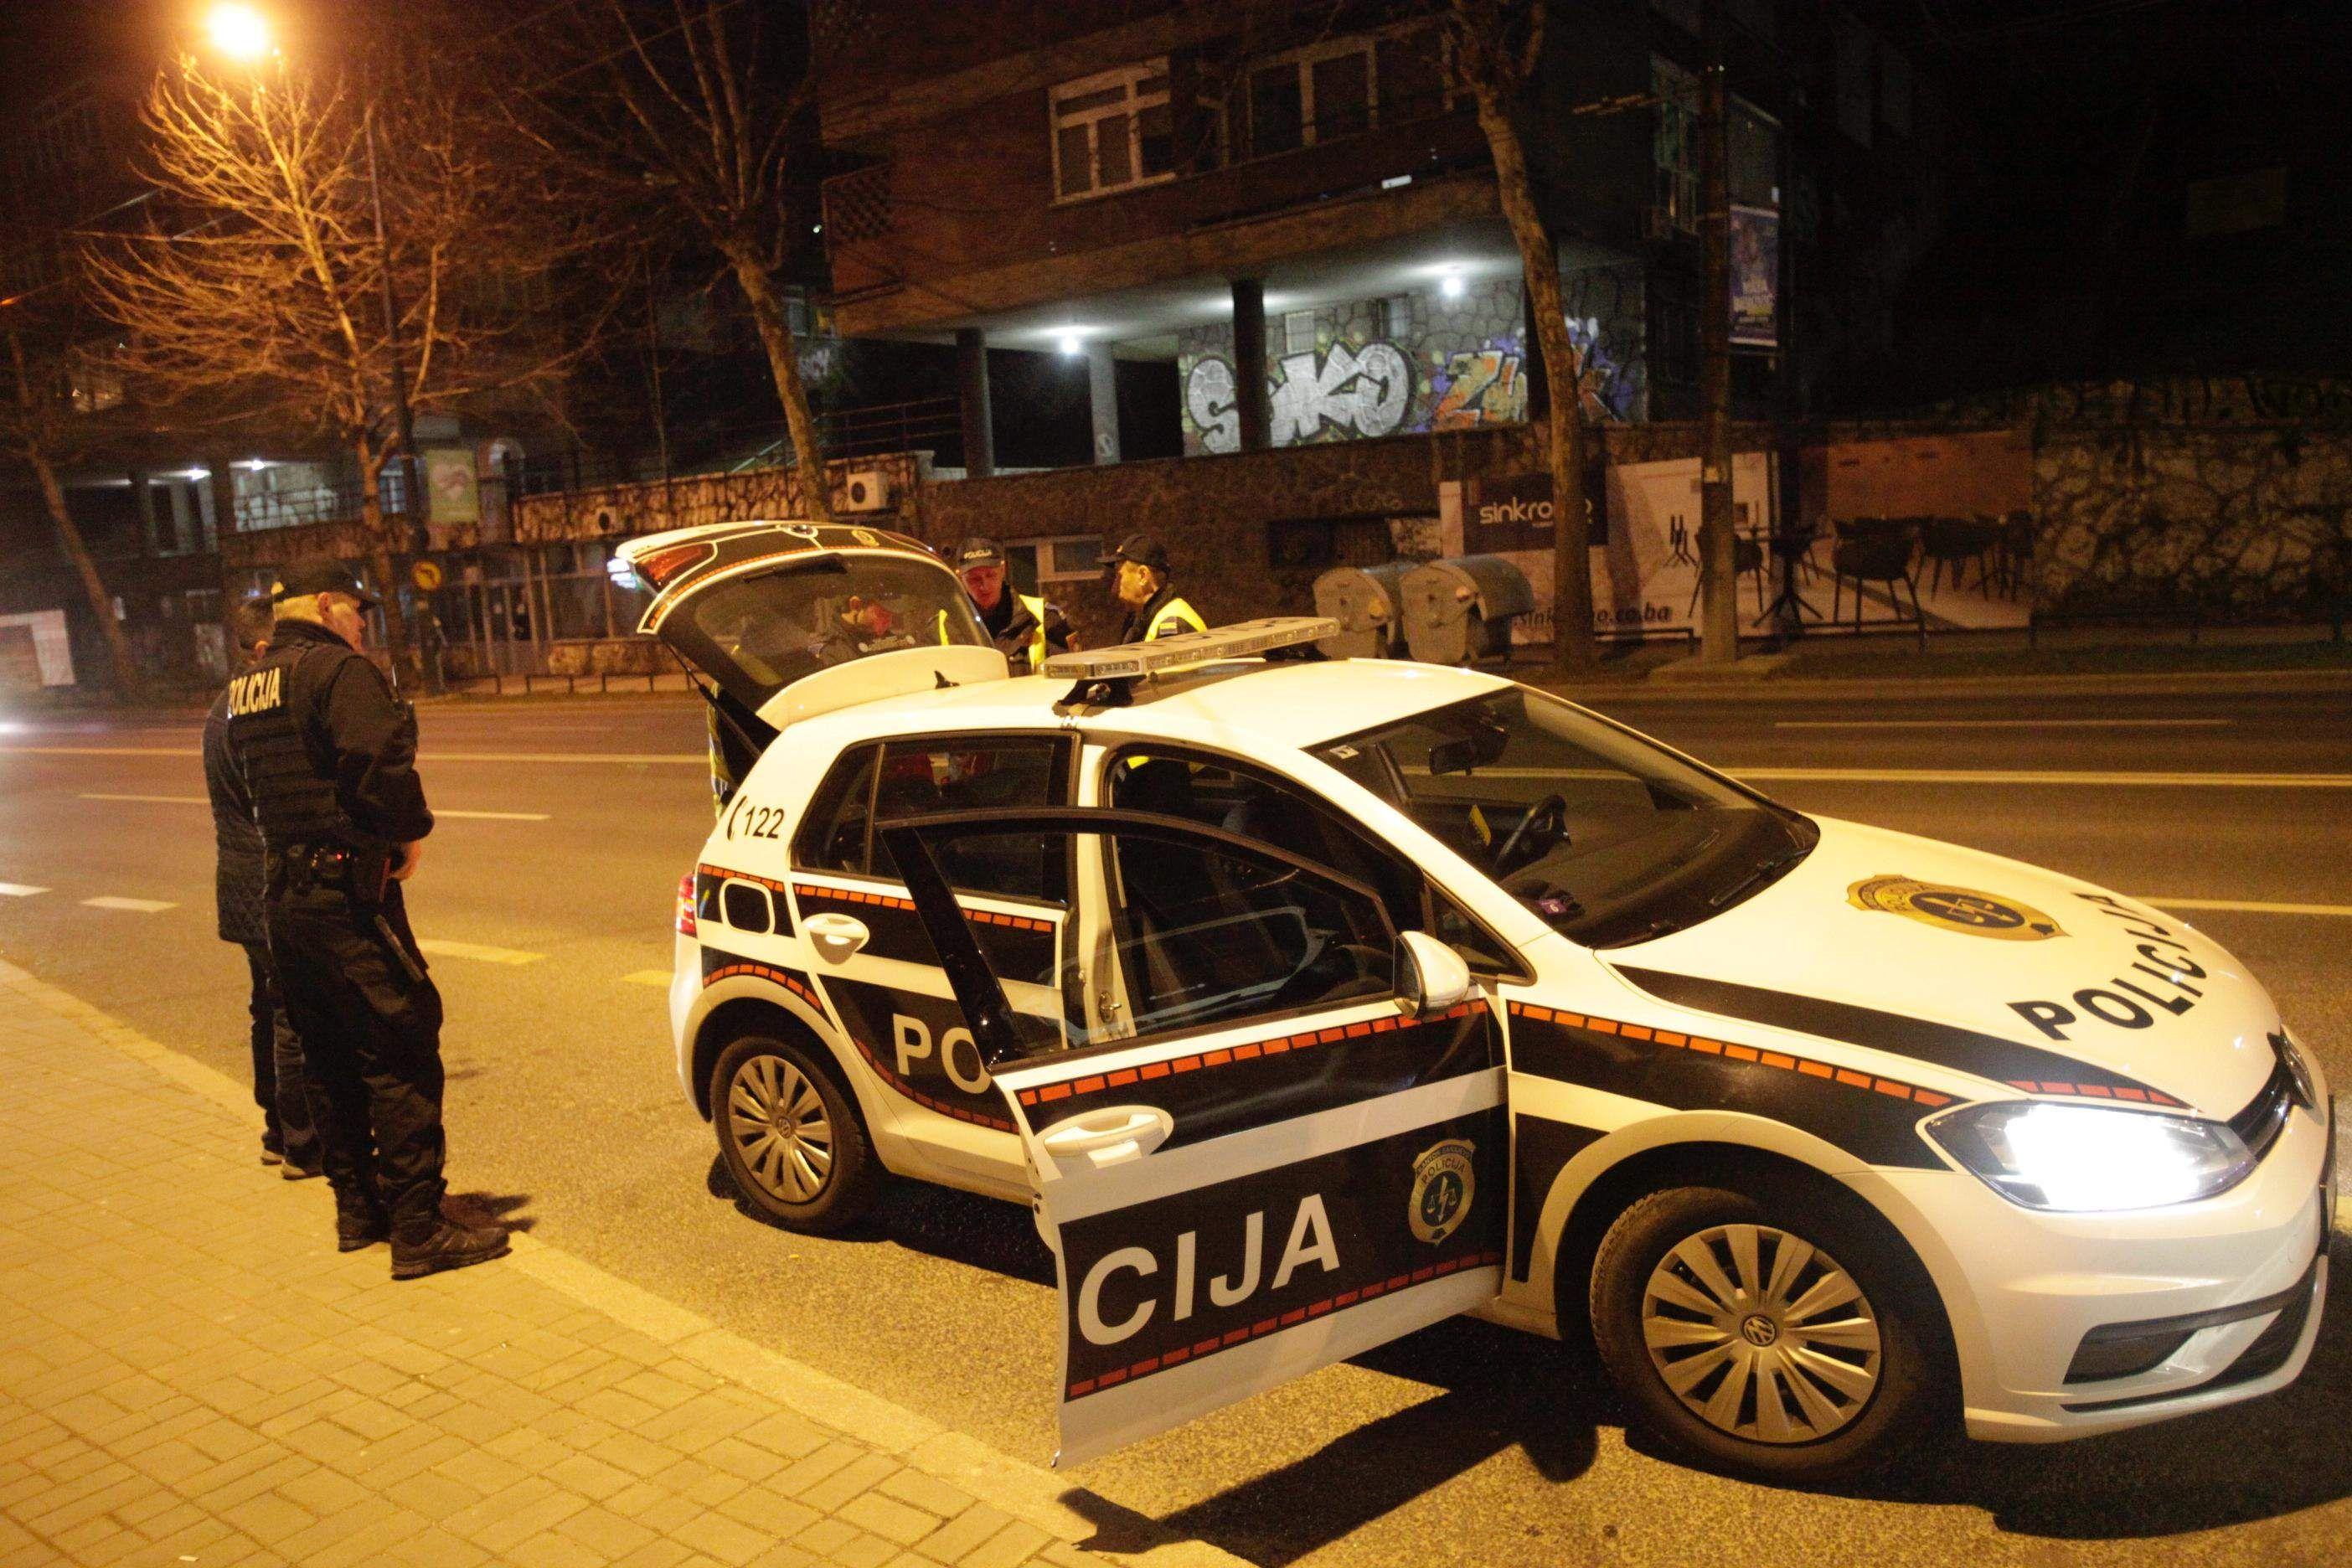 Muškarac ranjen oštrim predmetom u Alipašinoj ulici - Avaz